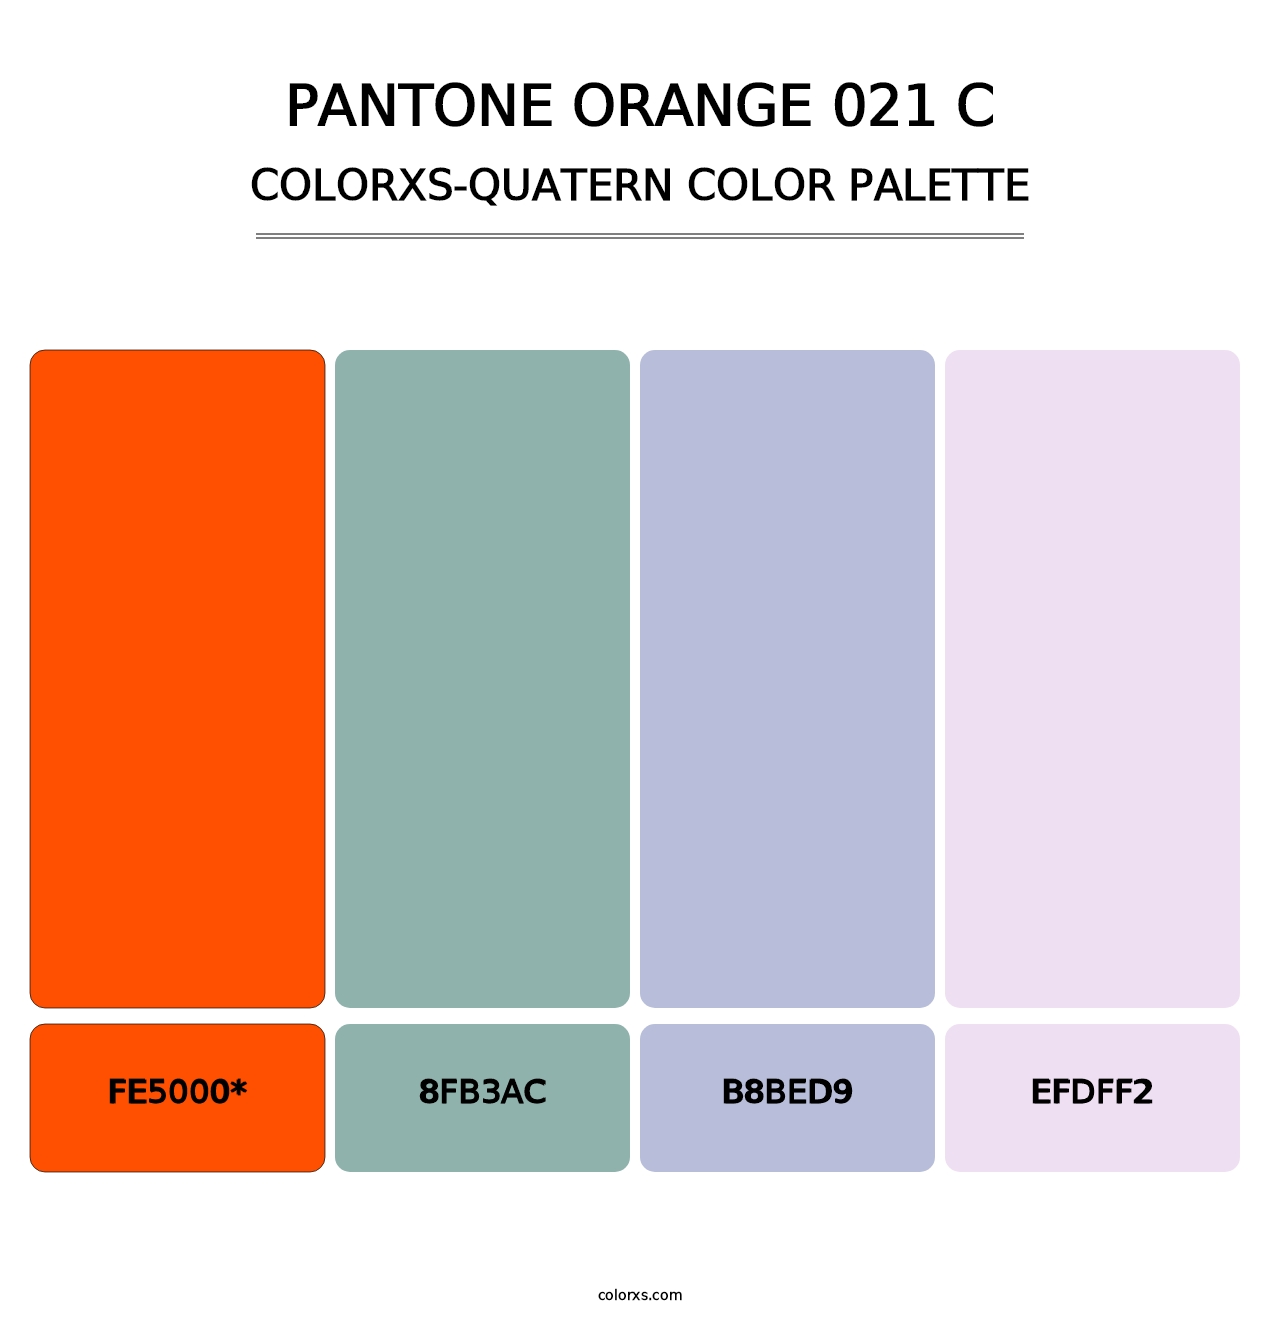 PANTONE Orange 021 C - Colorxs Quad Palette